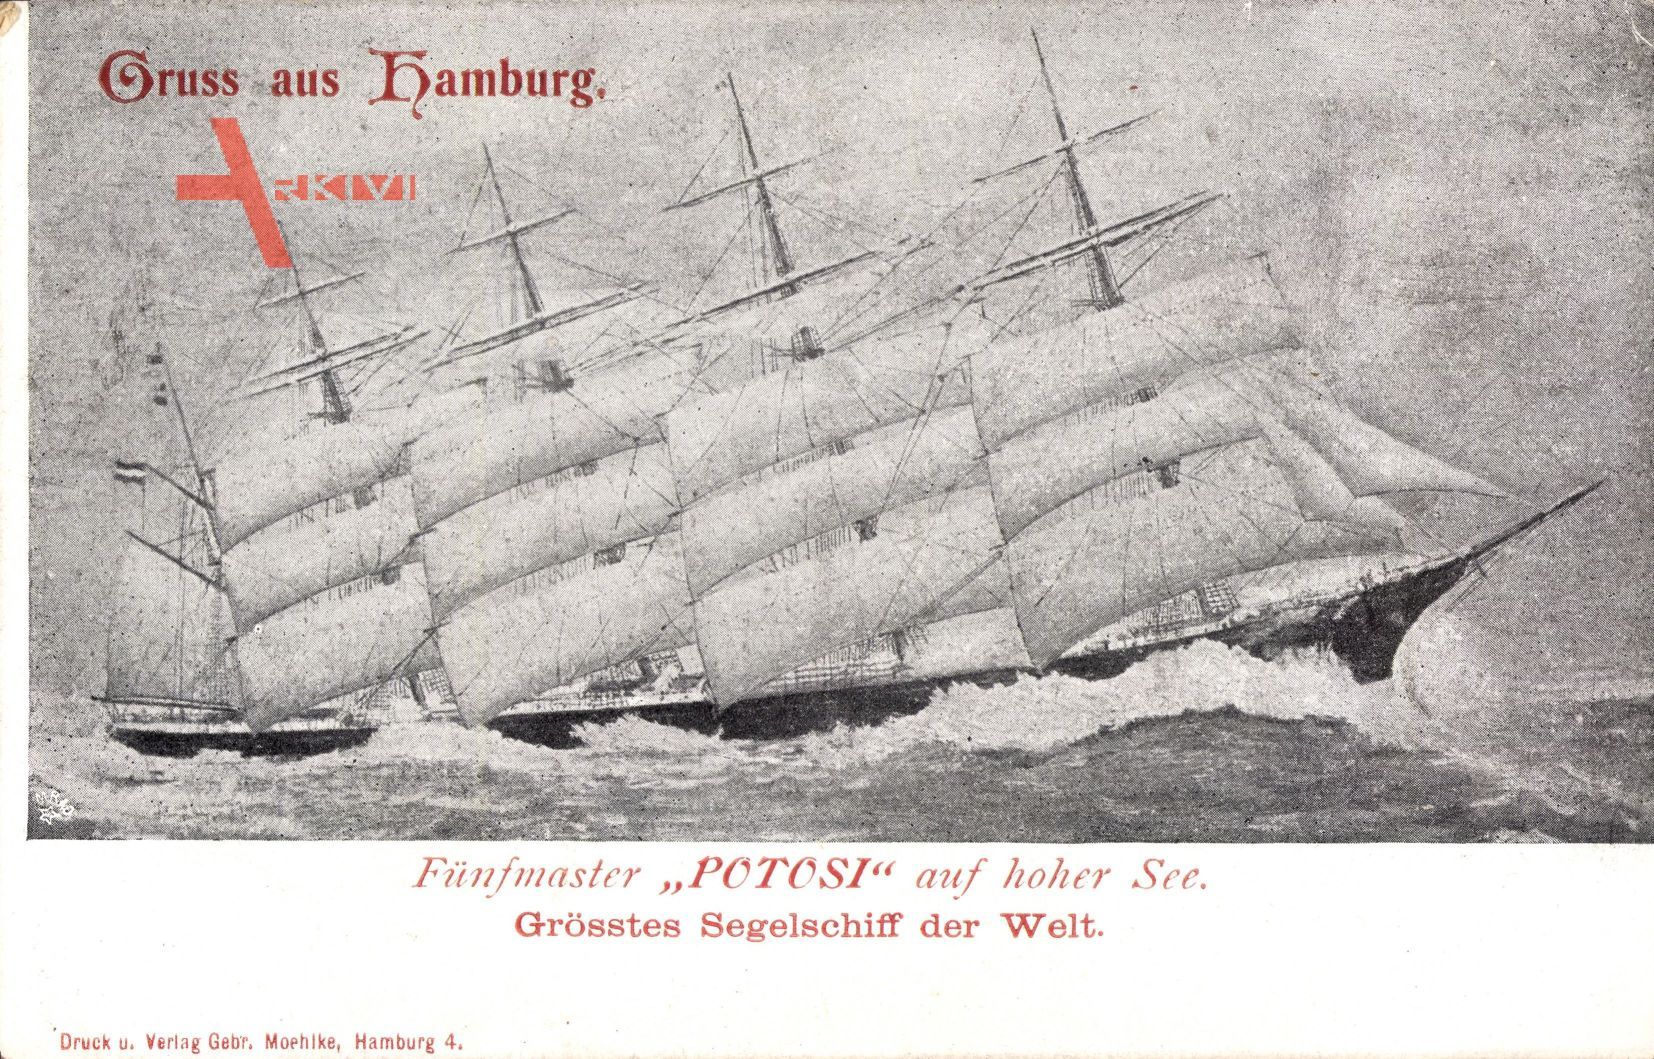 Hamburg, Fünfmaster Potosi auf hoher See, Größtes Segelschiff